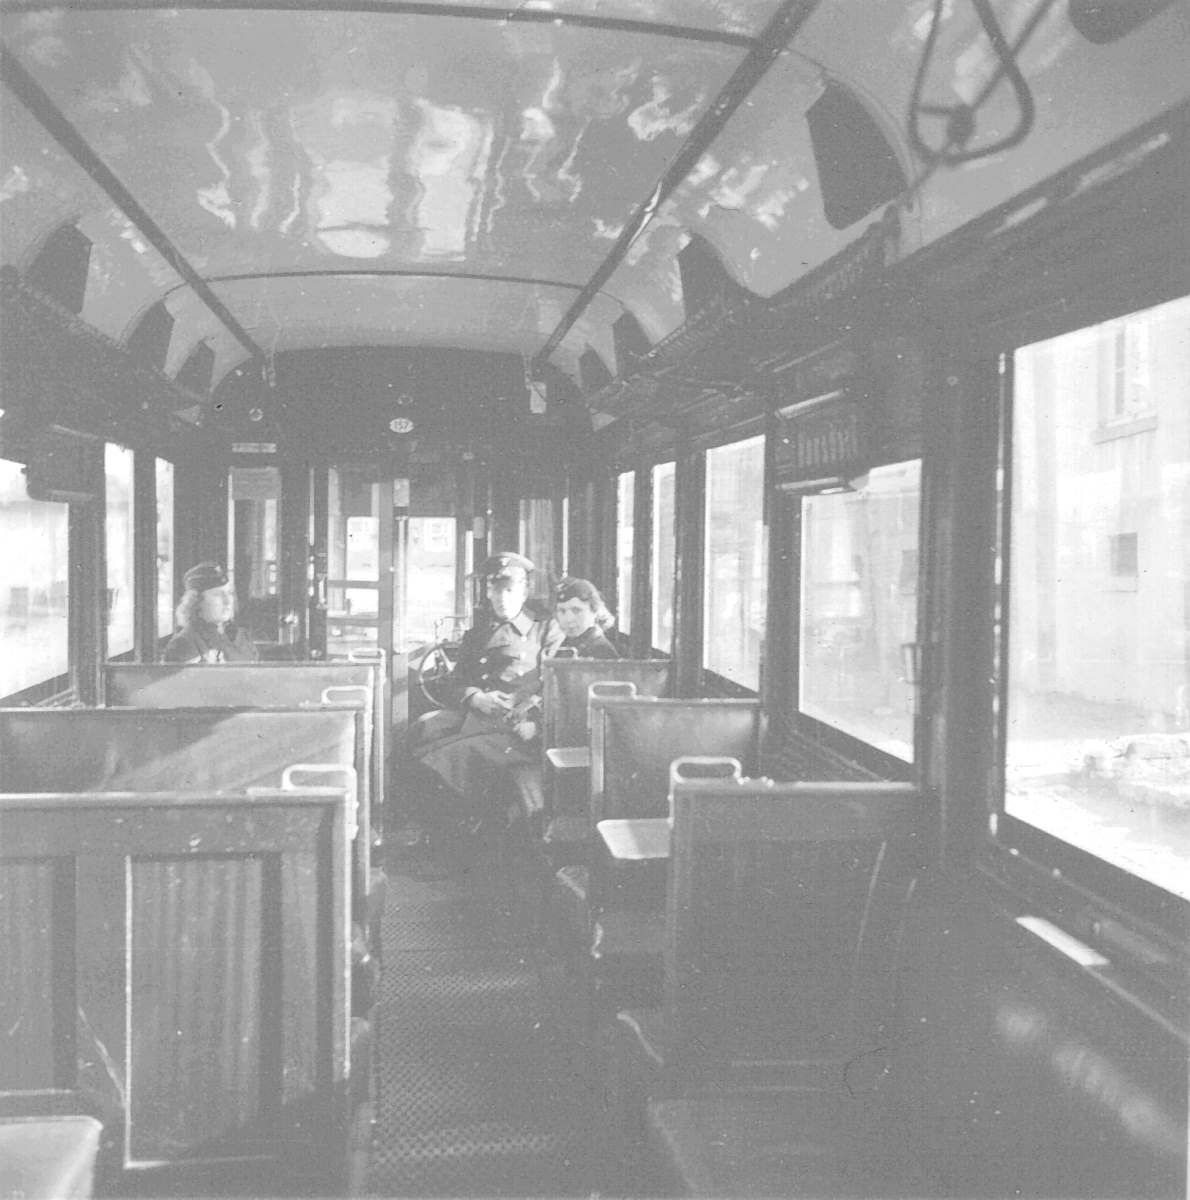 WuppertalerStrassenbahn/10_97_Tram_Wuppertal_Wagen157_Linie_nach_Ronsdorf_Wageninneres_mit_3_Dienstpersonen_wohl_Fahrer_und_Schaffnerinnen_etwa_anno_1940